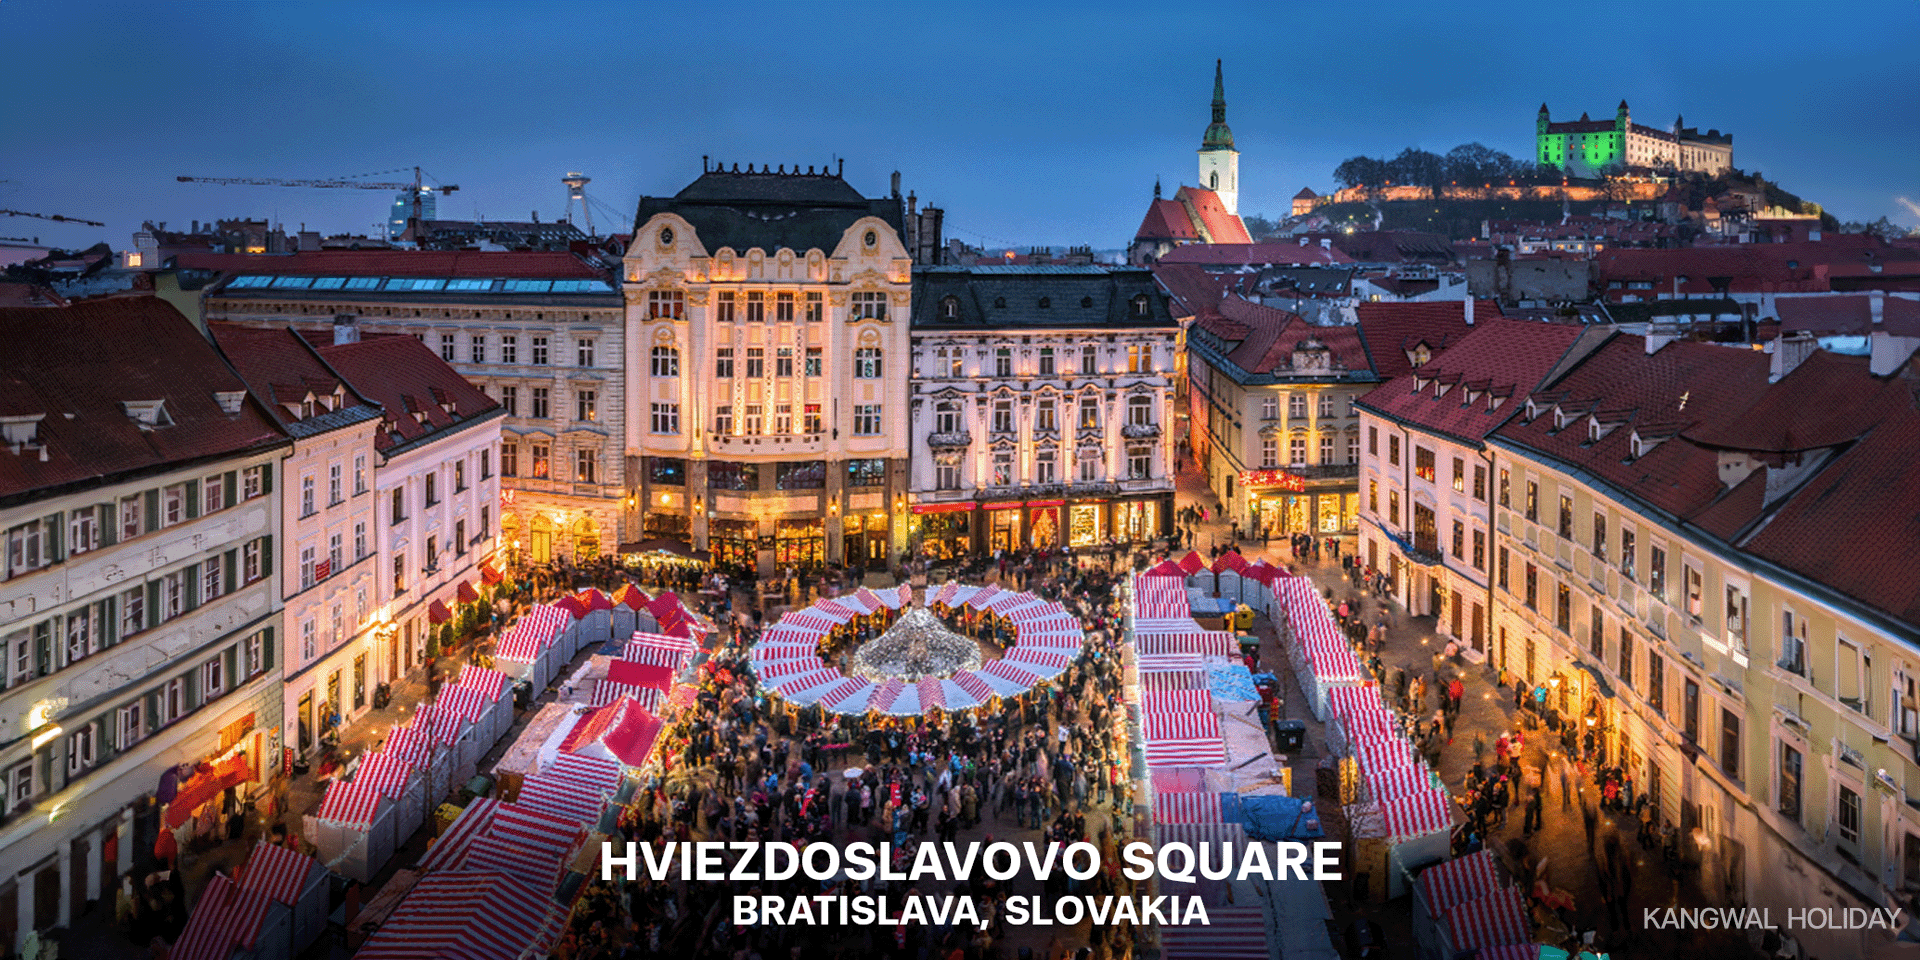 Hviezdoslavovo Square: Bratislava, Slovakia